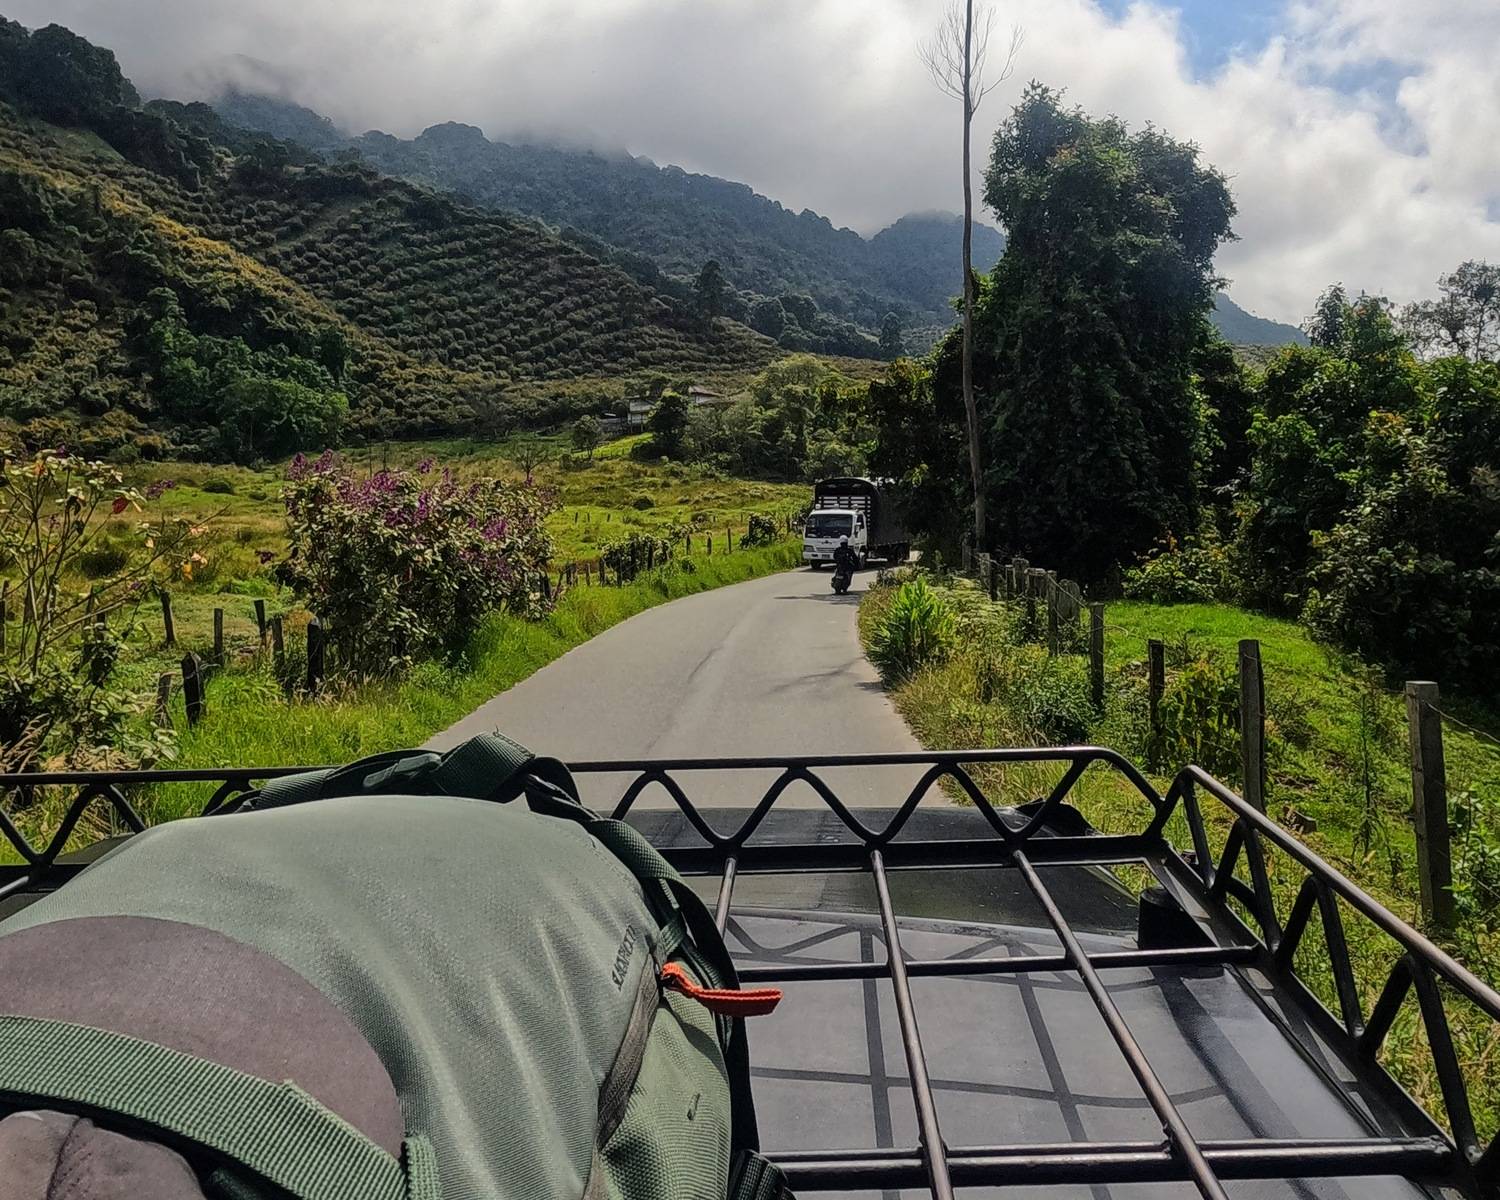 Mit dem Auto durch die Berge – da reist es sich am leichtesten mit Handgepäck